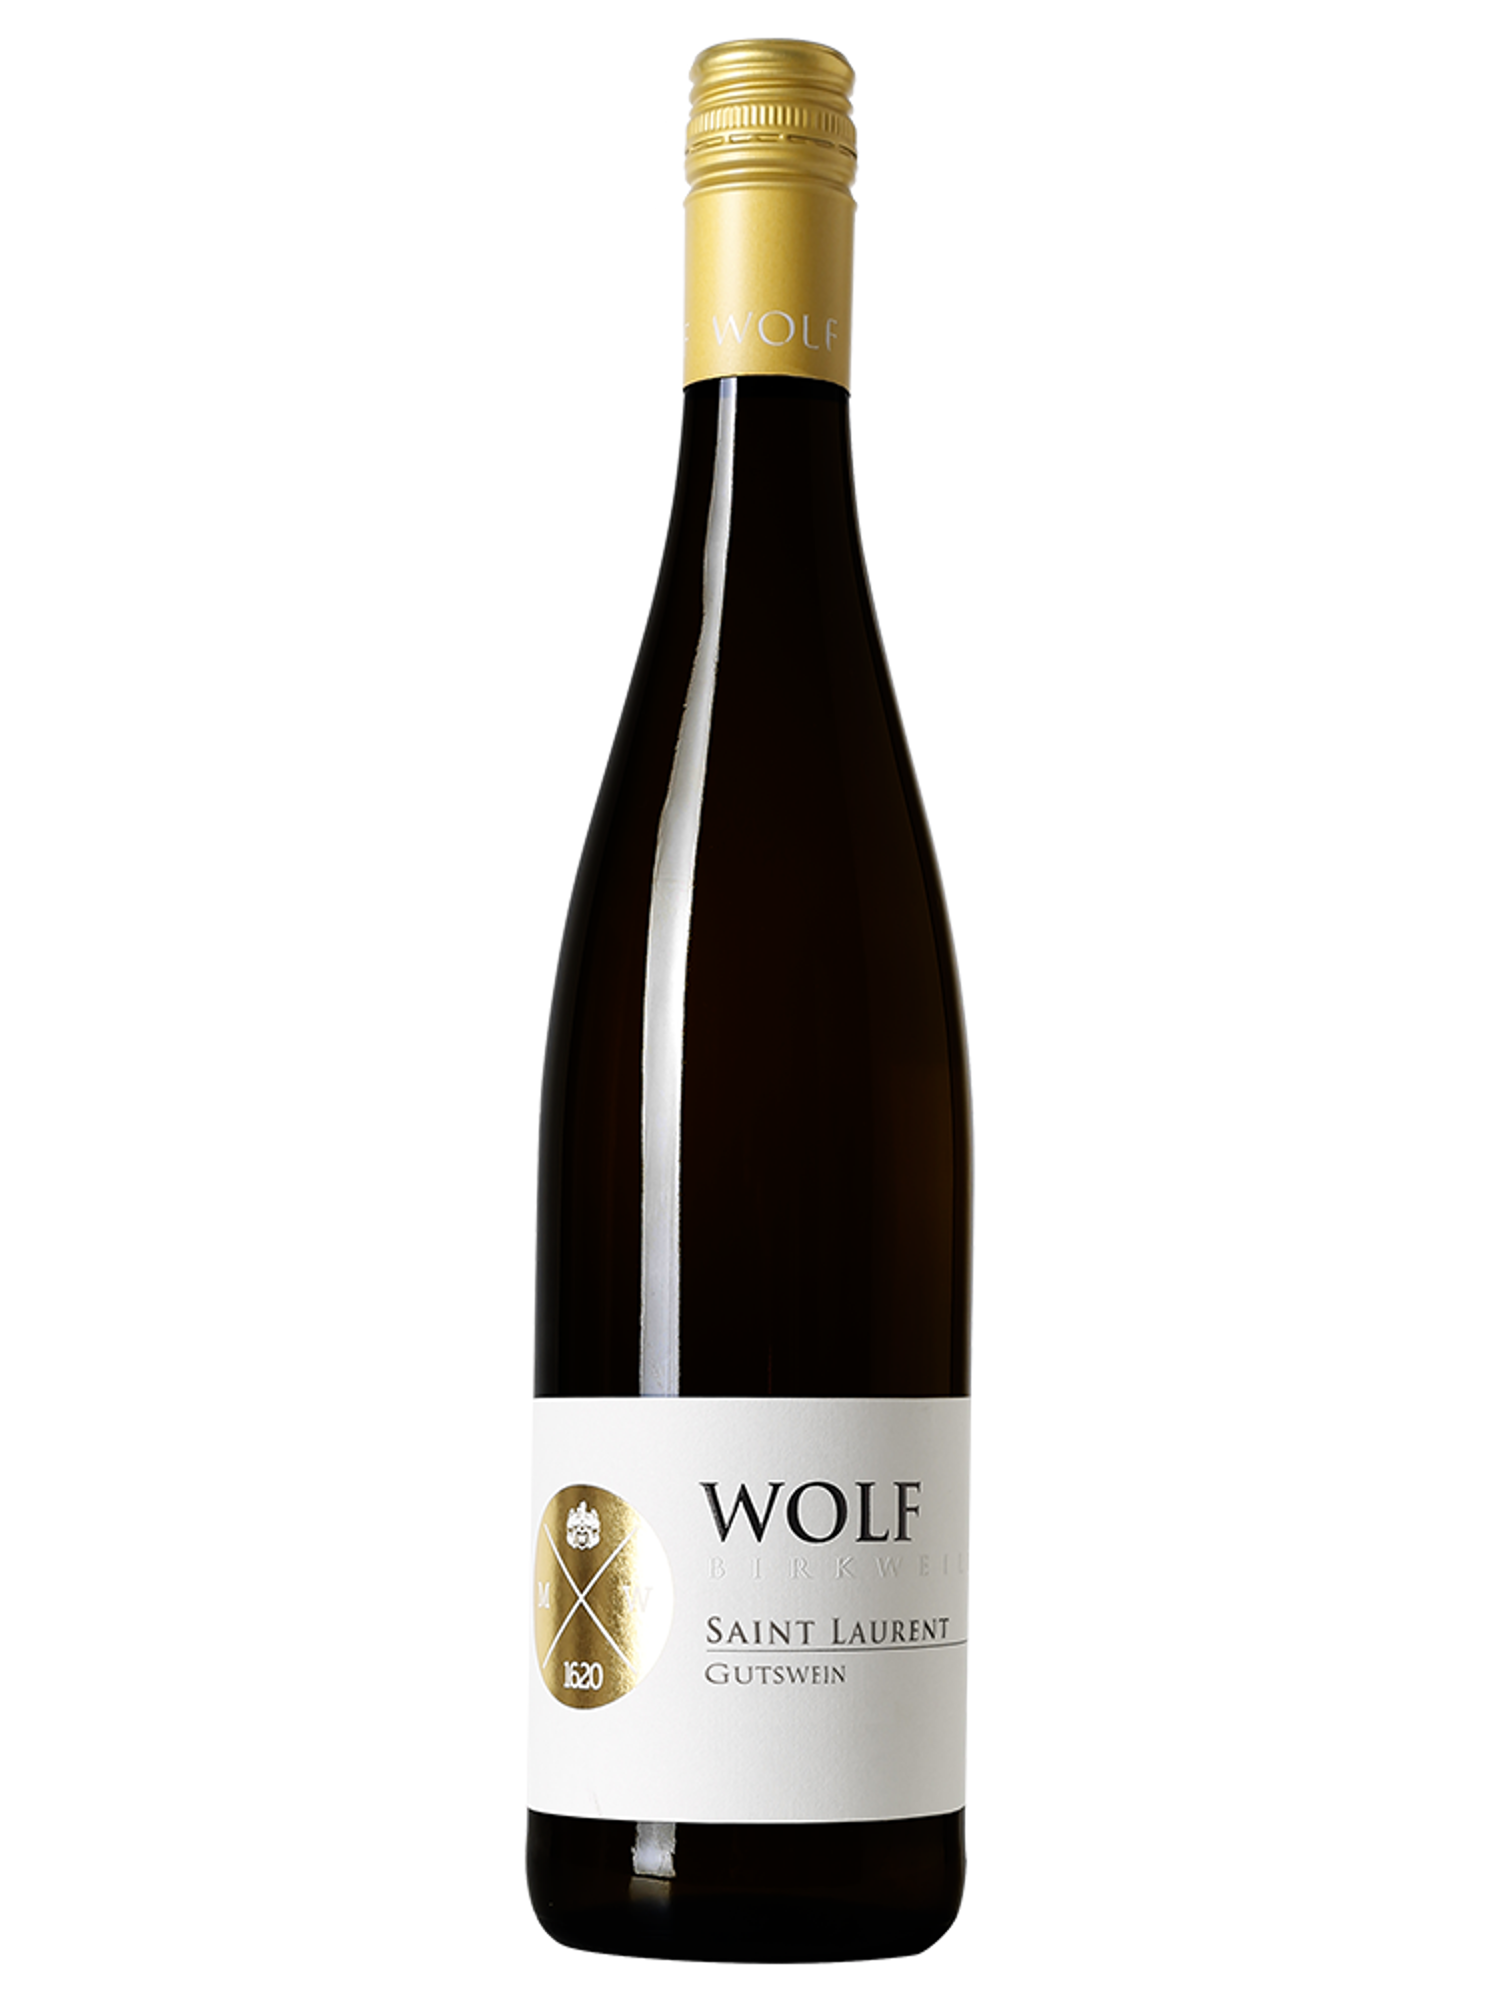 Saint Laurent trocken - Wolf - Gutswein